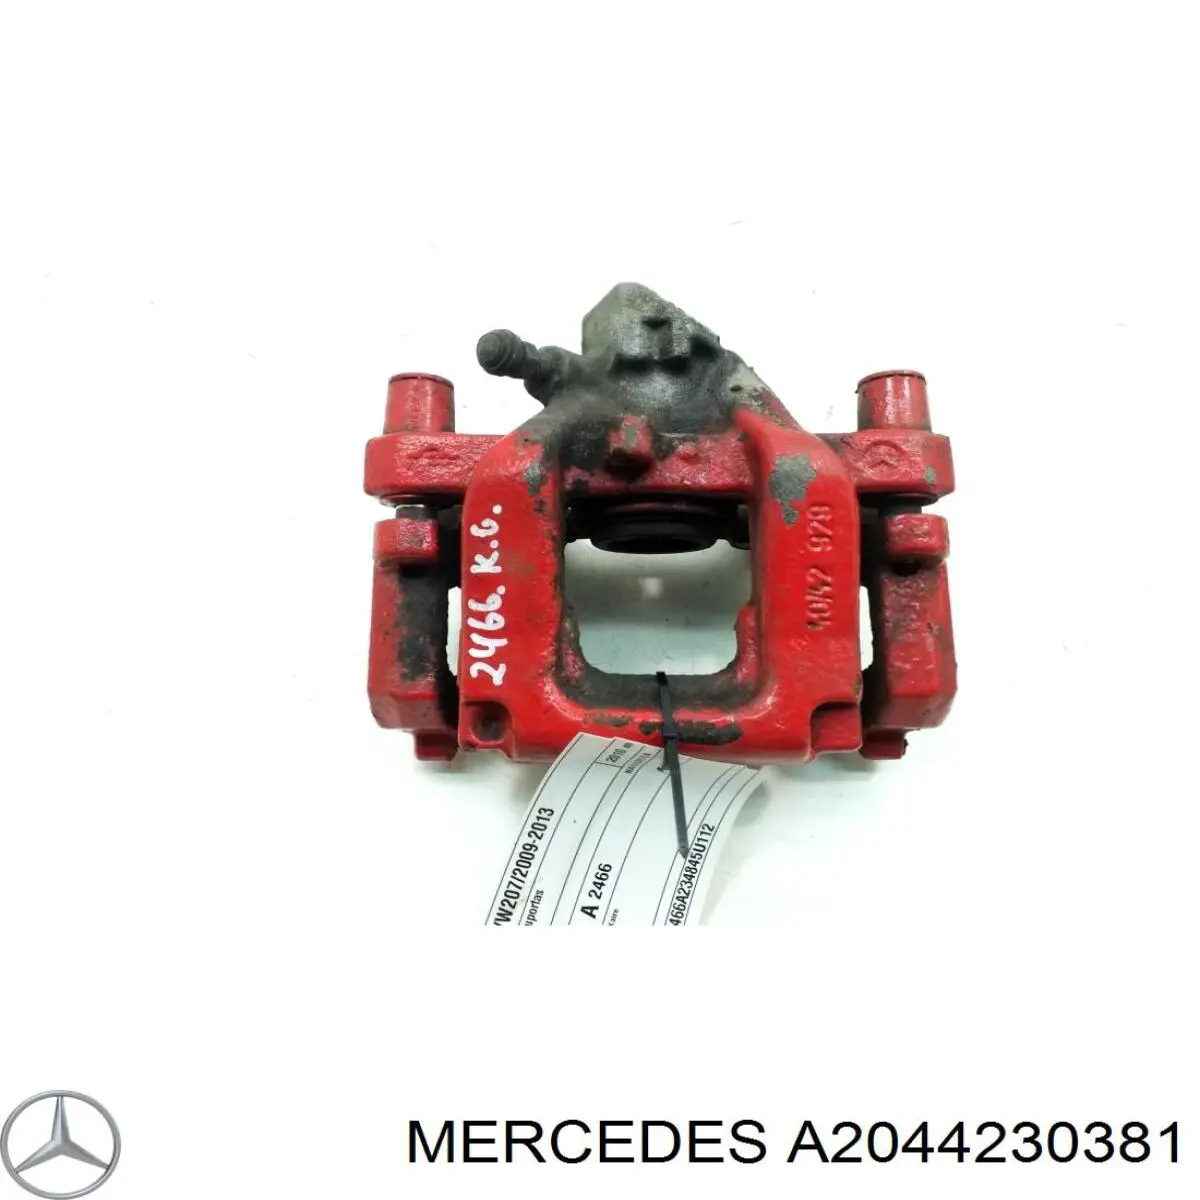 A2044230381 Mercedes pinza de freno trasera izquierda